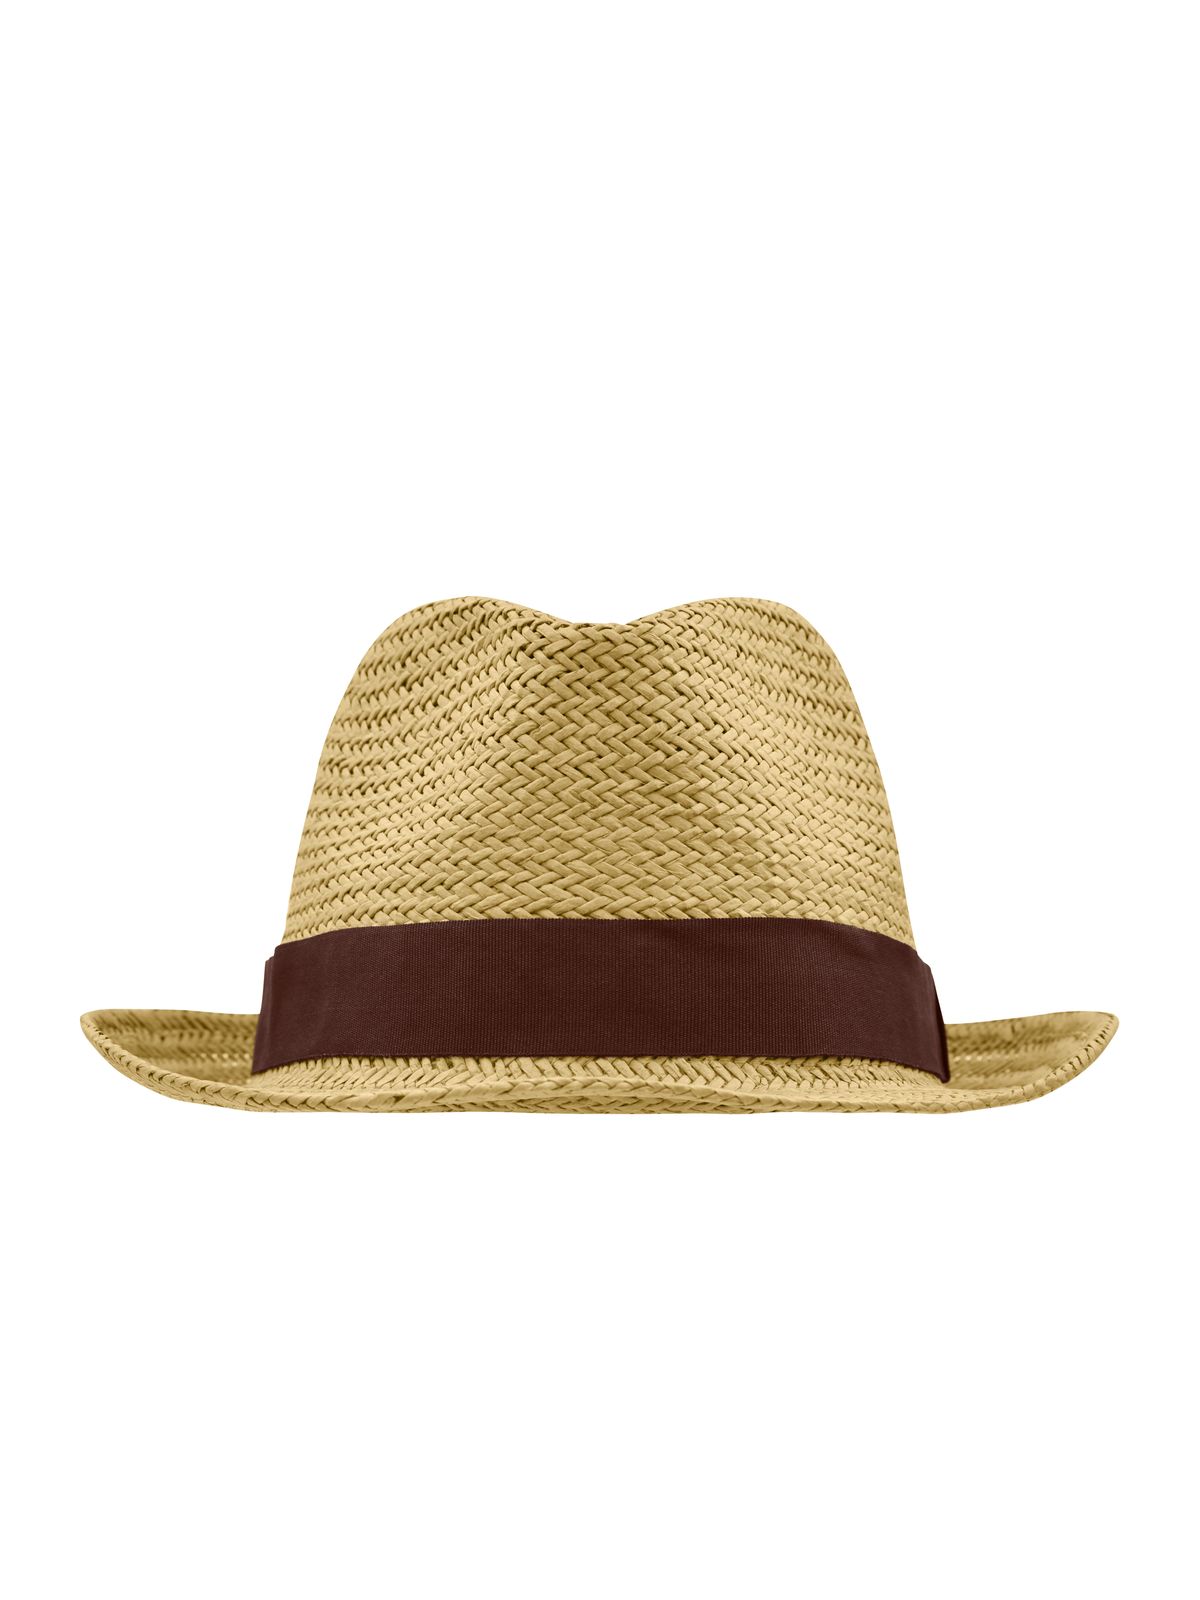 urban-hat-straw-brown.webp